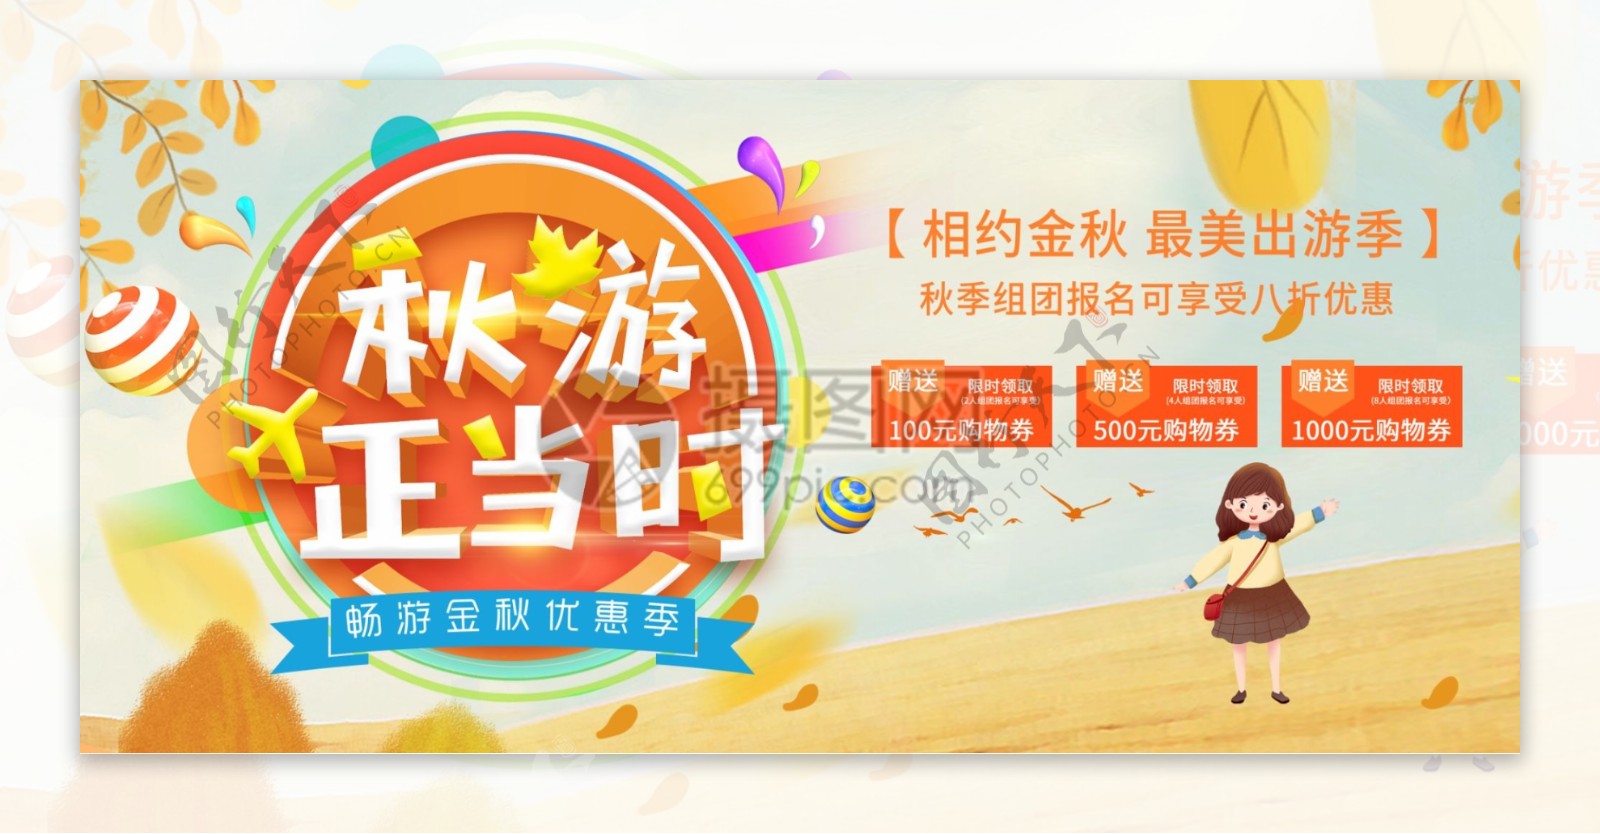 秋季旅游电商宣传banner